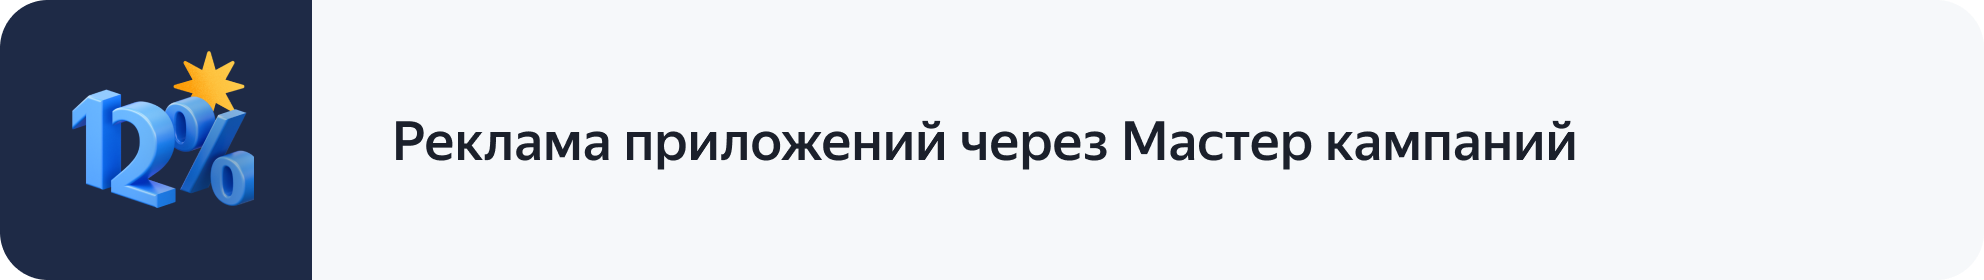 В новый год с новыми бонусными акциями — Новости рекламных технологий Яндекса5